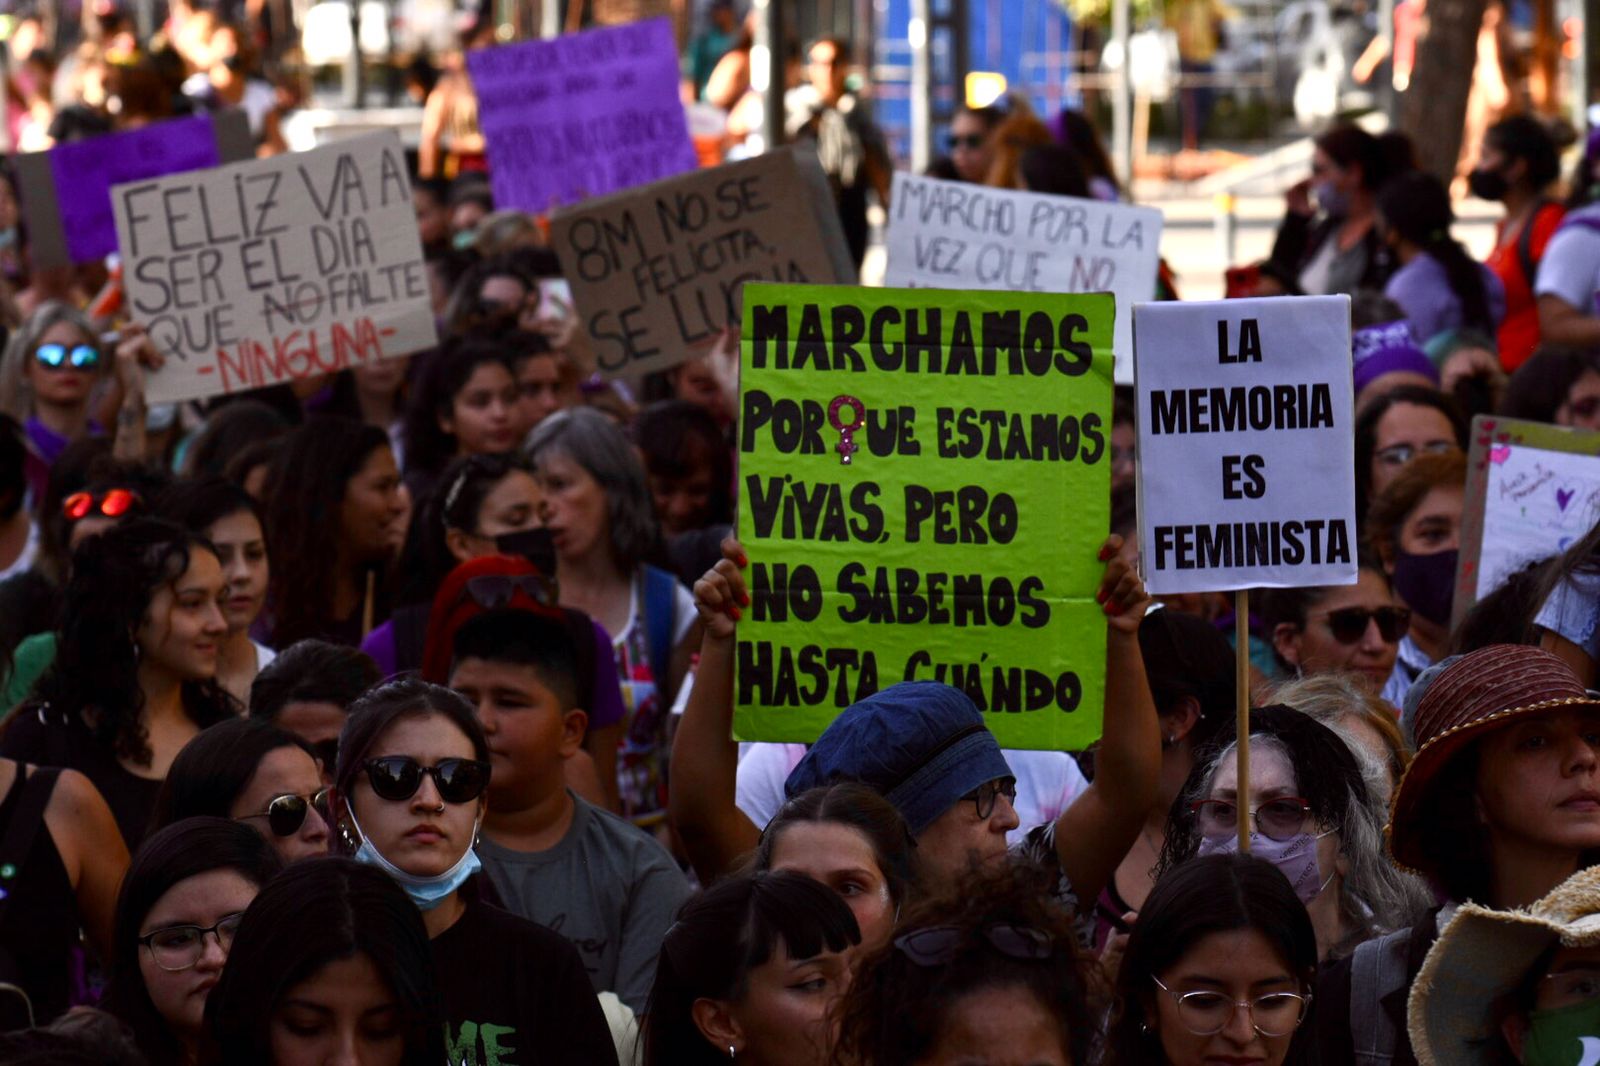 Entre 2017 y 2021 hubo 26 femicidios en Neuquén, según el relevamiento presentado por la organización Mumalá. Foto Matías Subat.